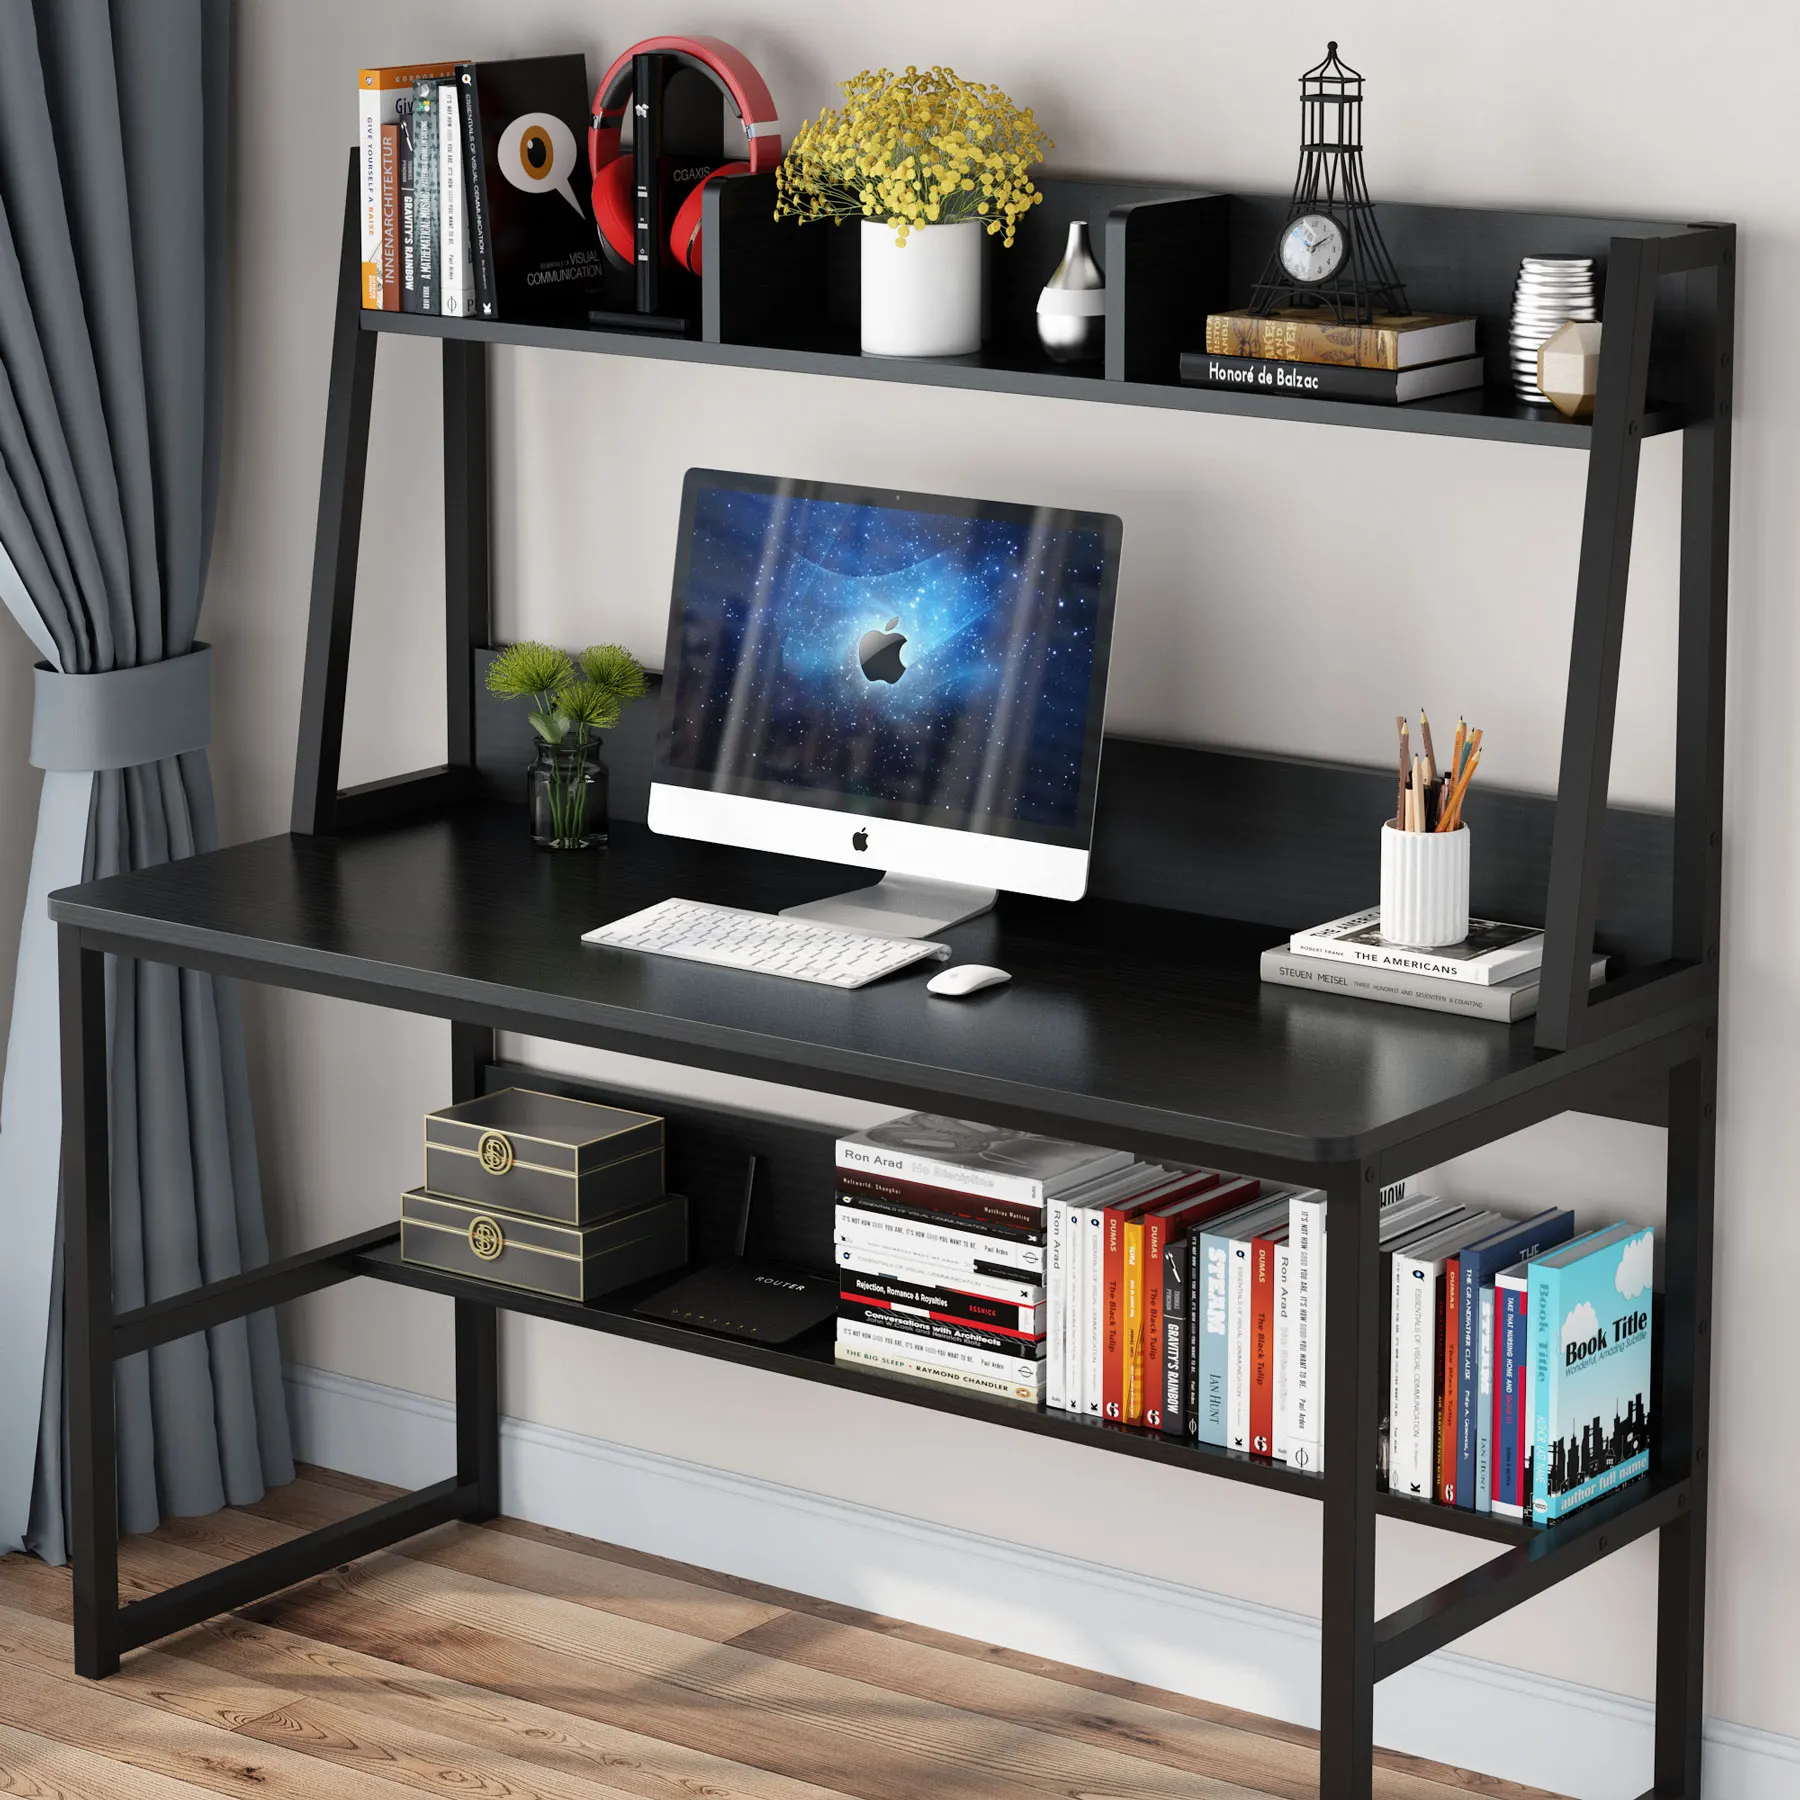 2023 New Design Wooden Desk Table Home Large Corner Studio Computer Desk